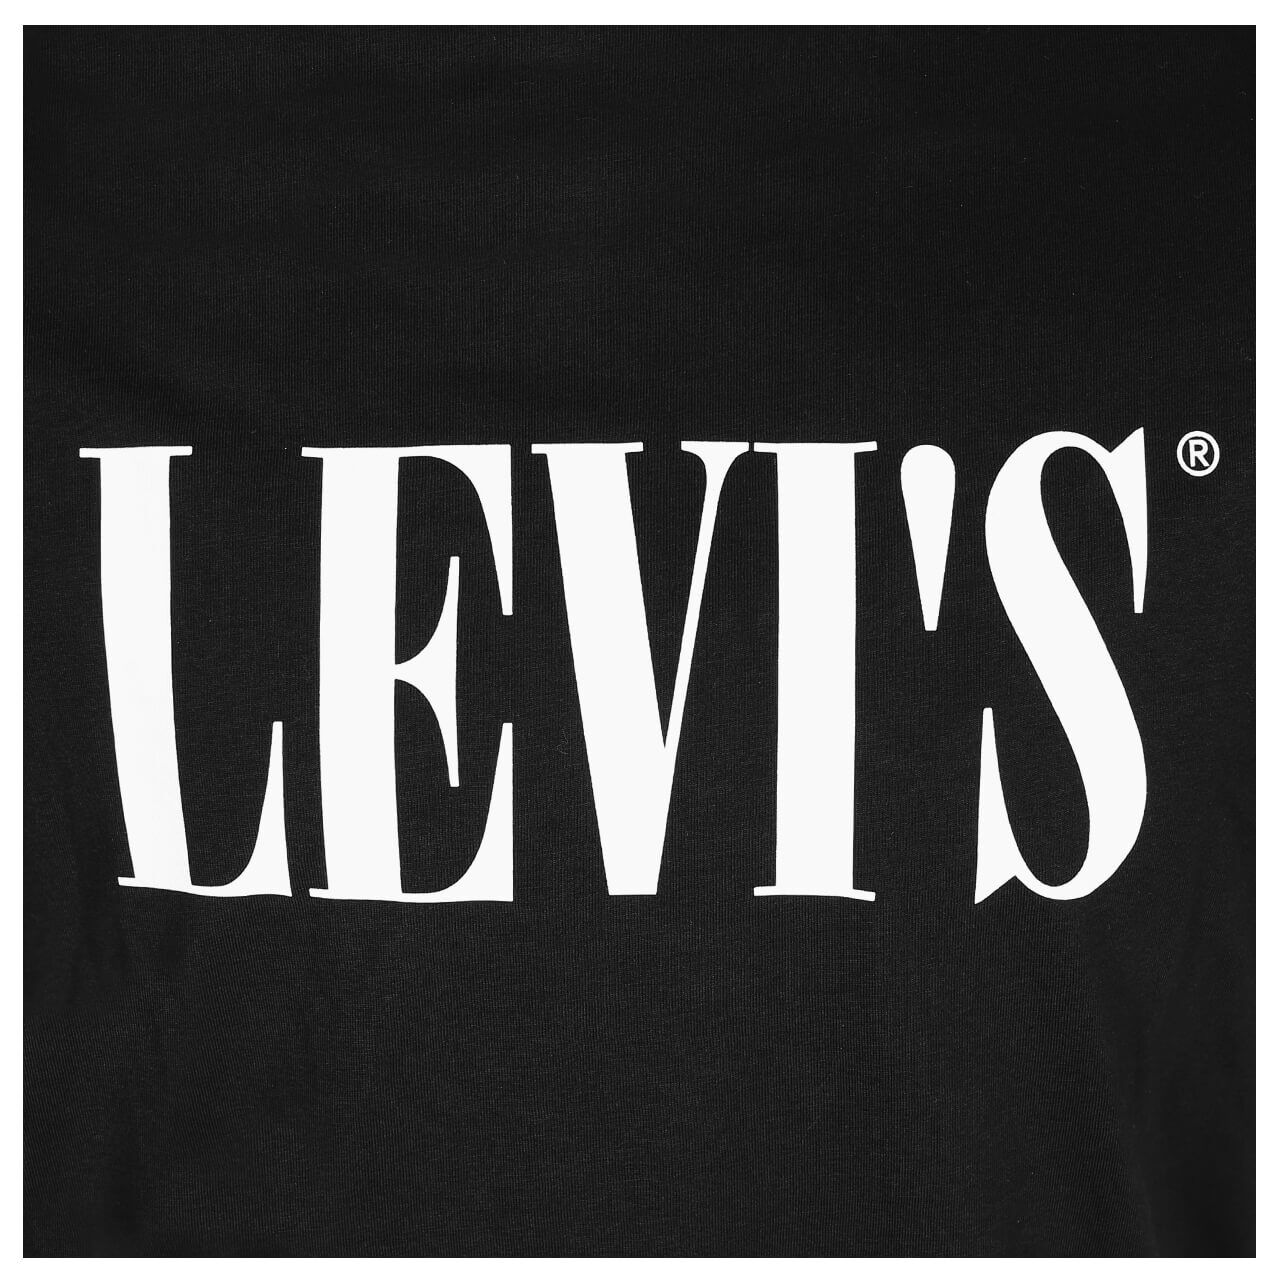 Levi's T-Shirt für Herren in Schwarz, FarbNr.: 0131